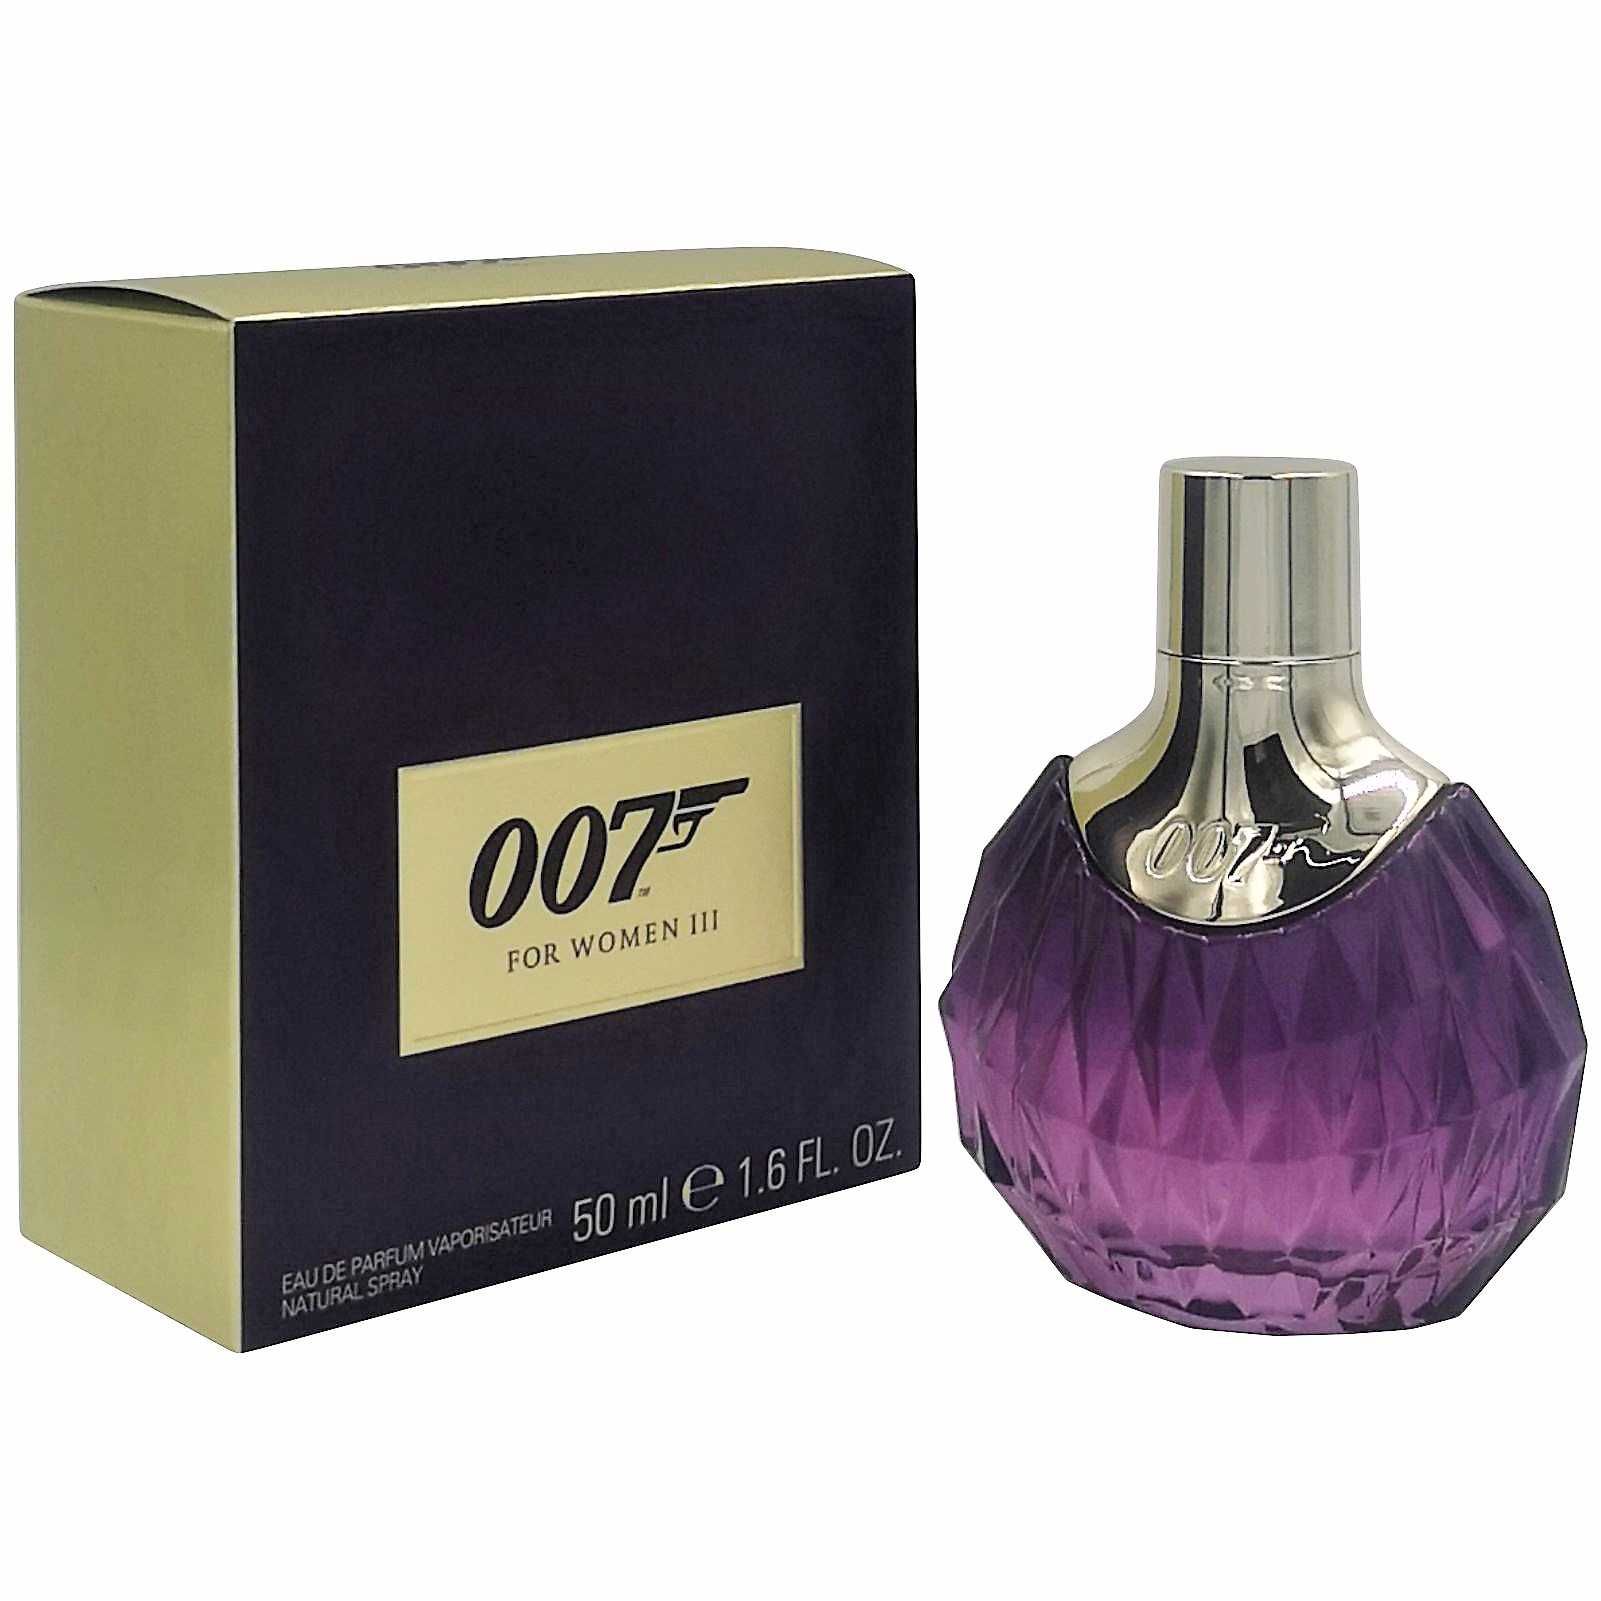 Perfumy | James Bond 007 | For Women III | 50 ml | edp Białystok Centrum •  OLX.pl